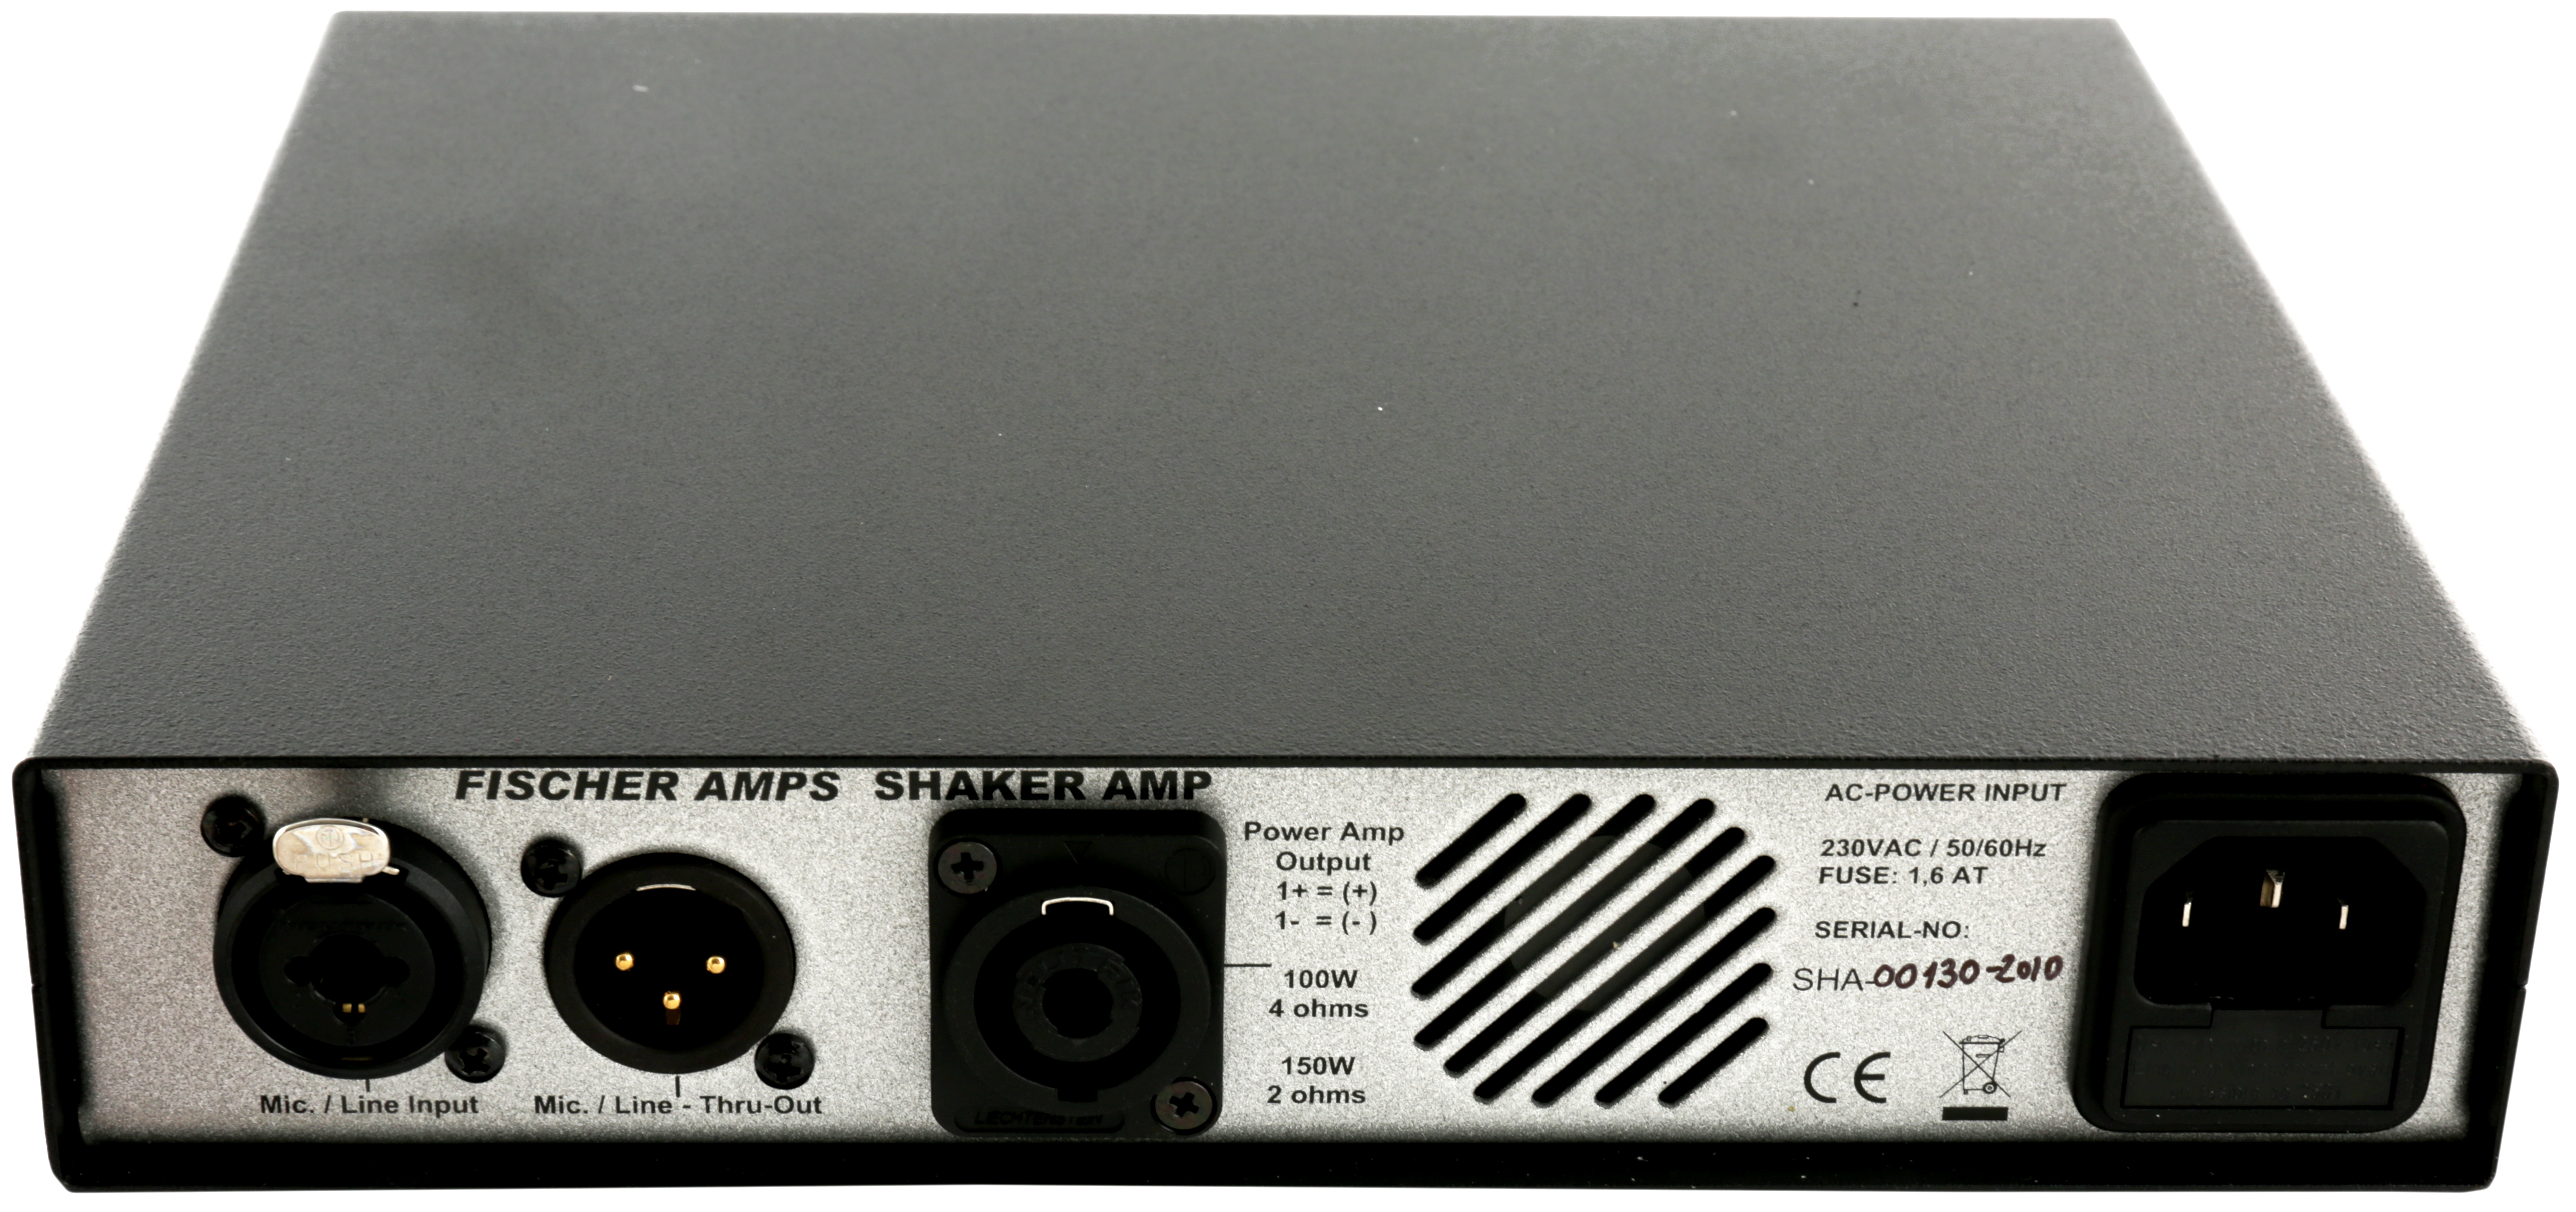 Shaker Amp Endstufe für Shaker